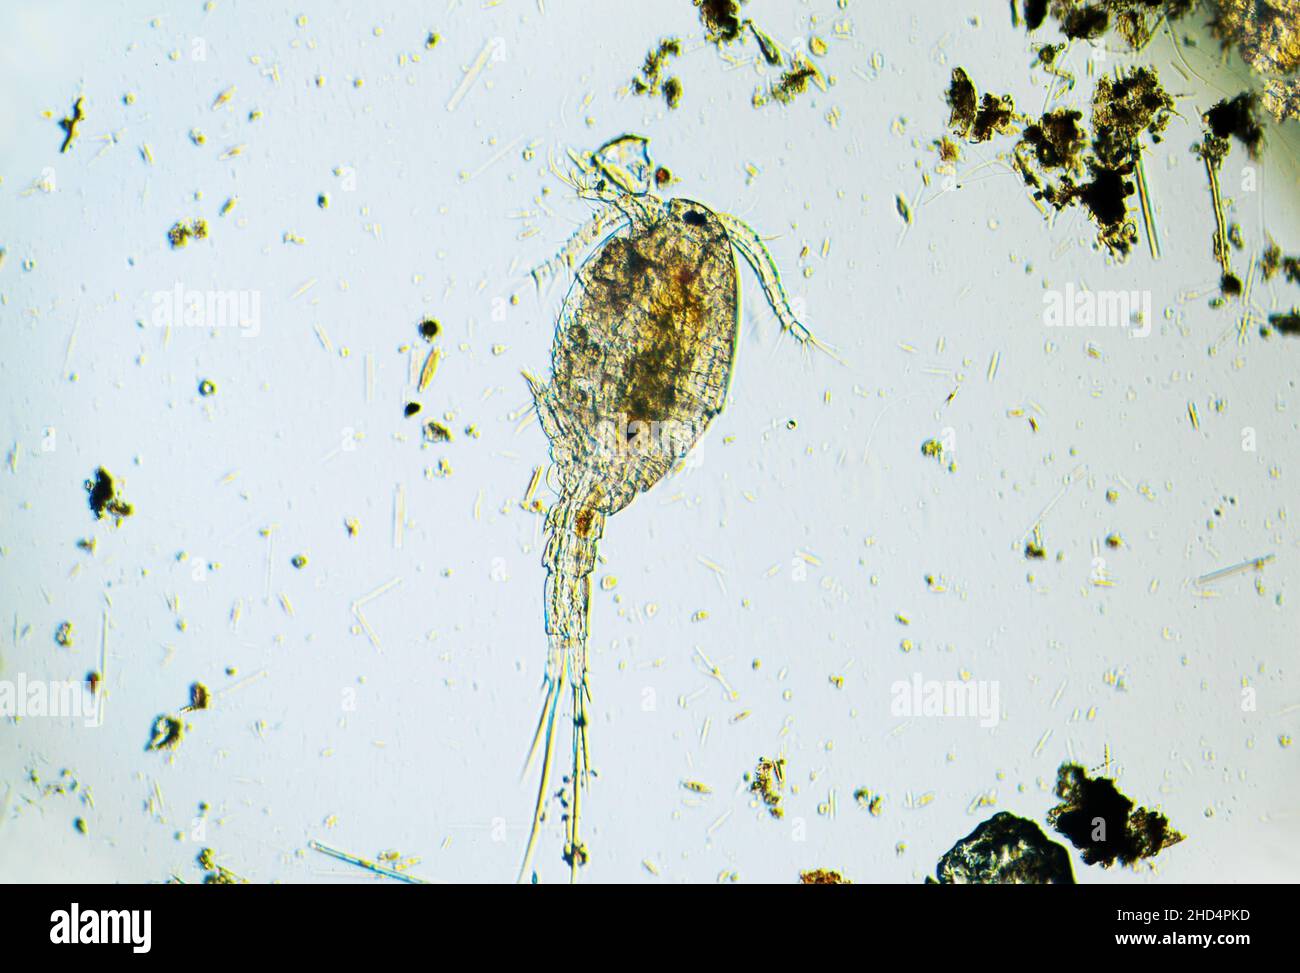 Copepod Cyclops ist ein kleines Krustentier, das im Süßwasserteich gefunden wird. Zooplankton, Mikrokrebse unter dem Lichtmikroskop. Vergrößerung von 100 mal, mi Stockfoto